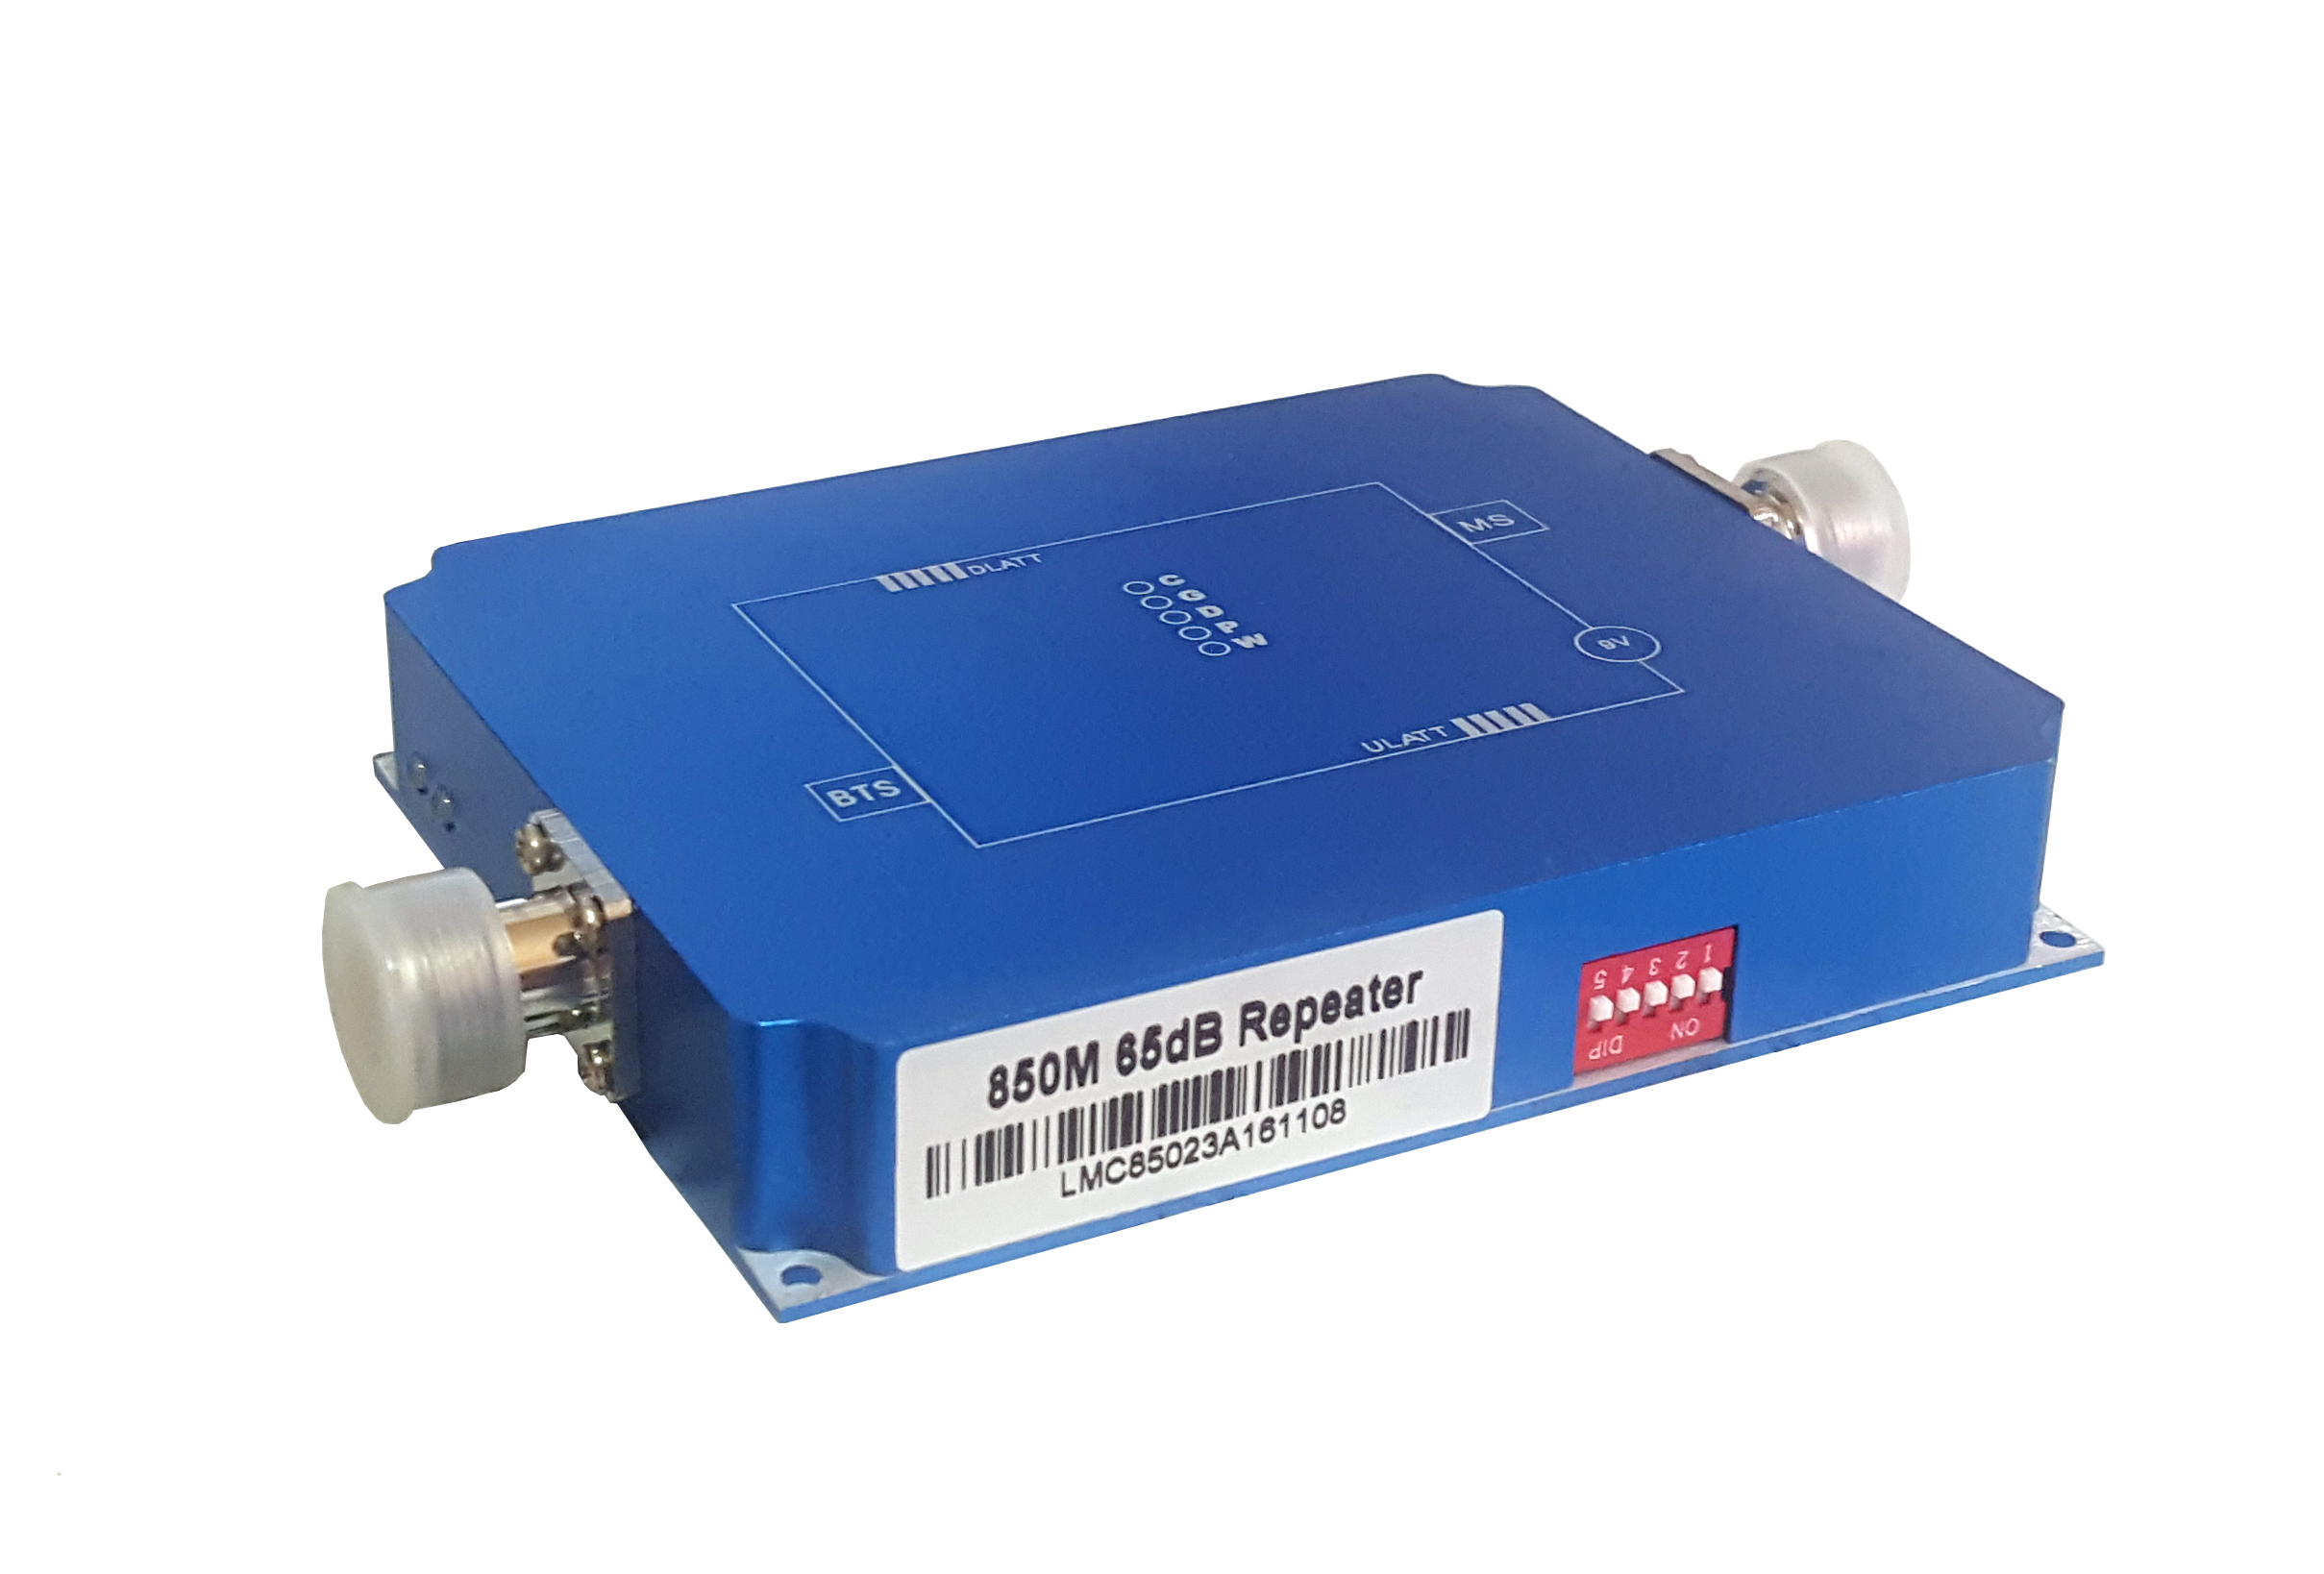  Amplificador de señal celular CDMA980, mini versión de